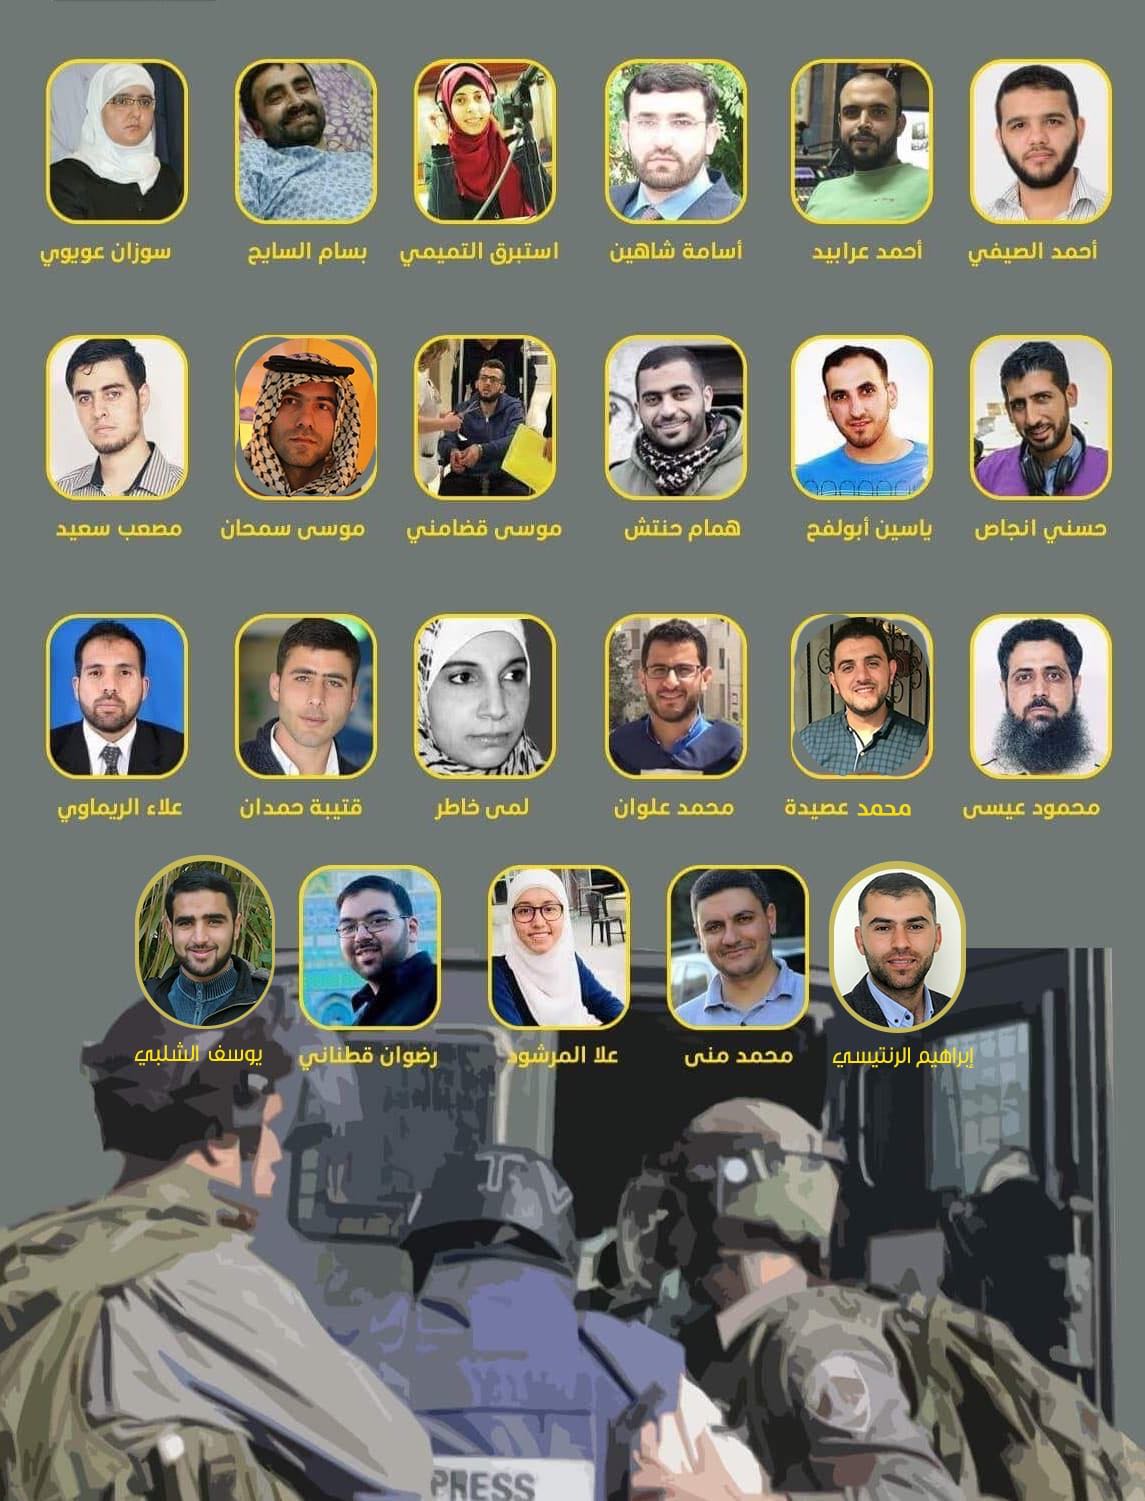 الصحفيون الفلسطينيون في سجون الاحتلال الصهيوني